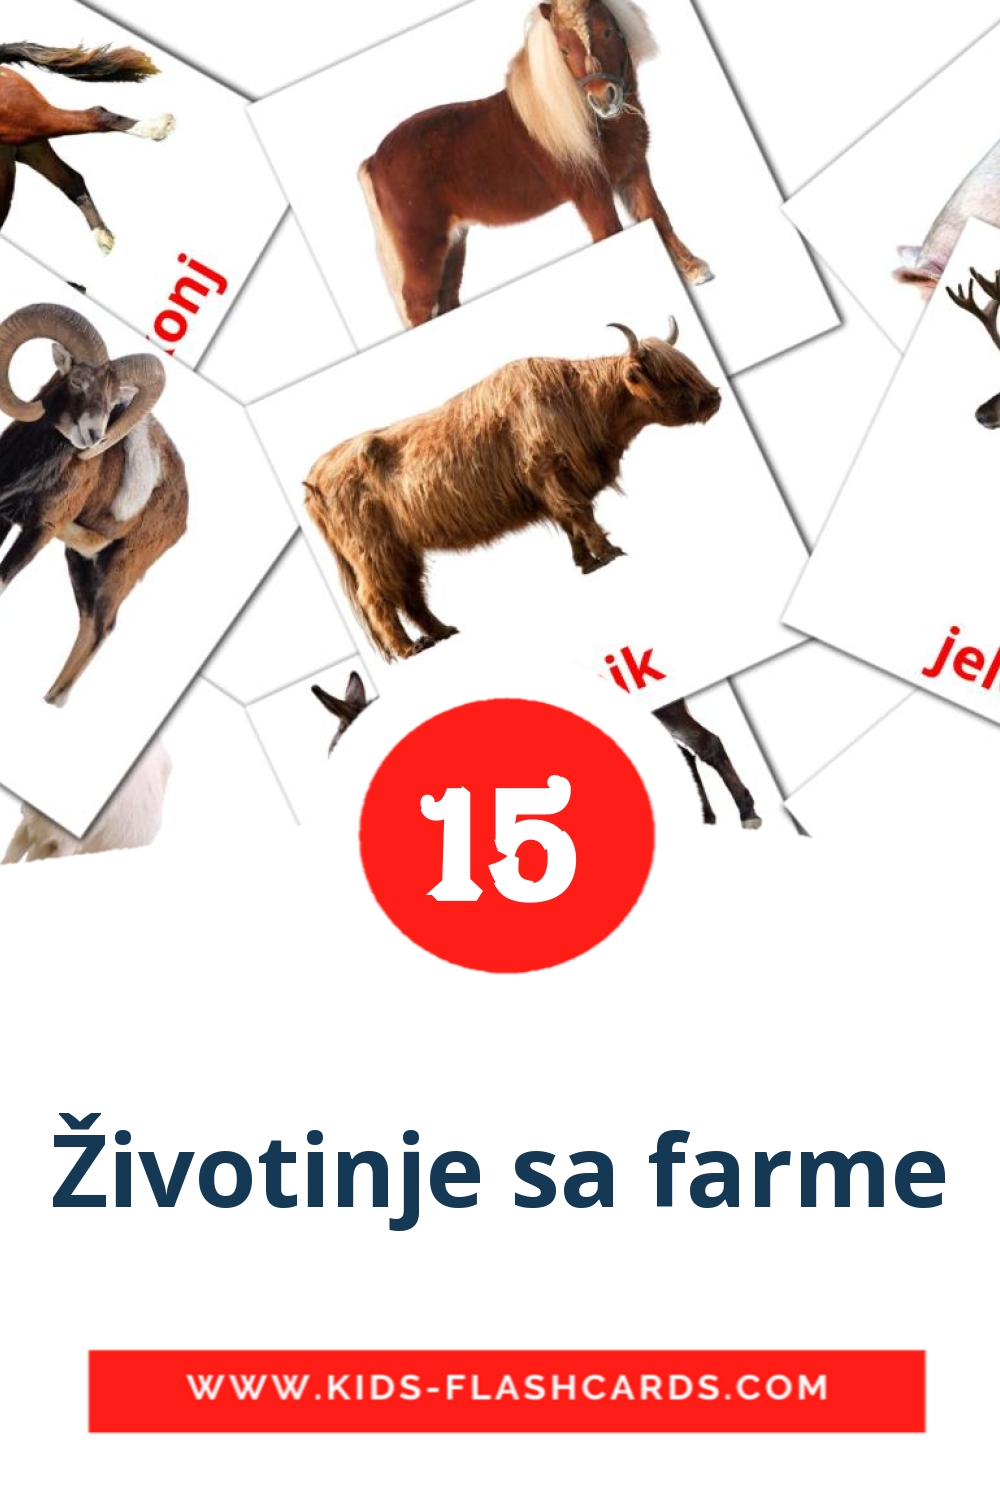 15 tarjetas didacticas de Životinje sa farme para el jardín de infancia en bosnio